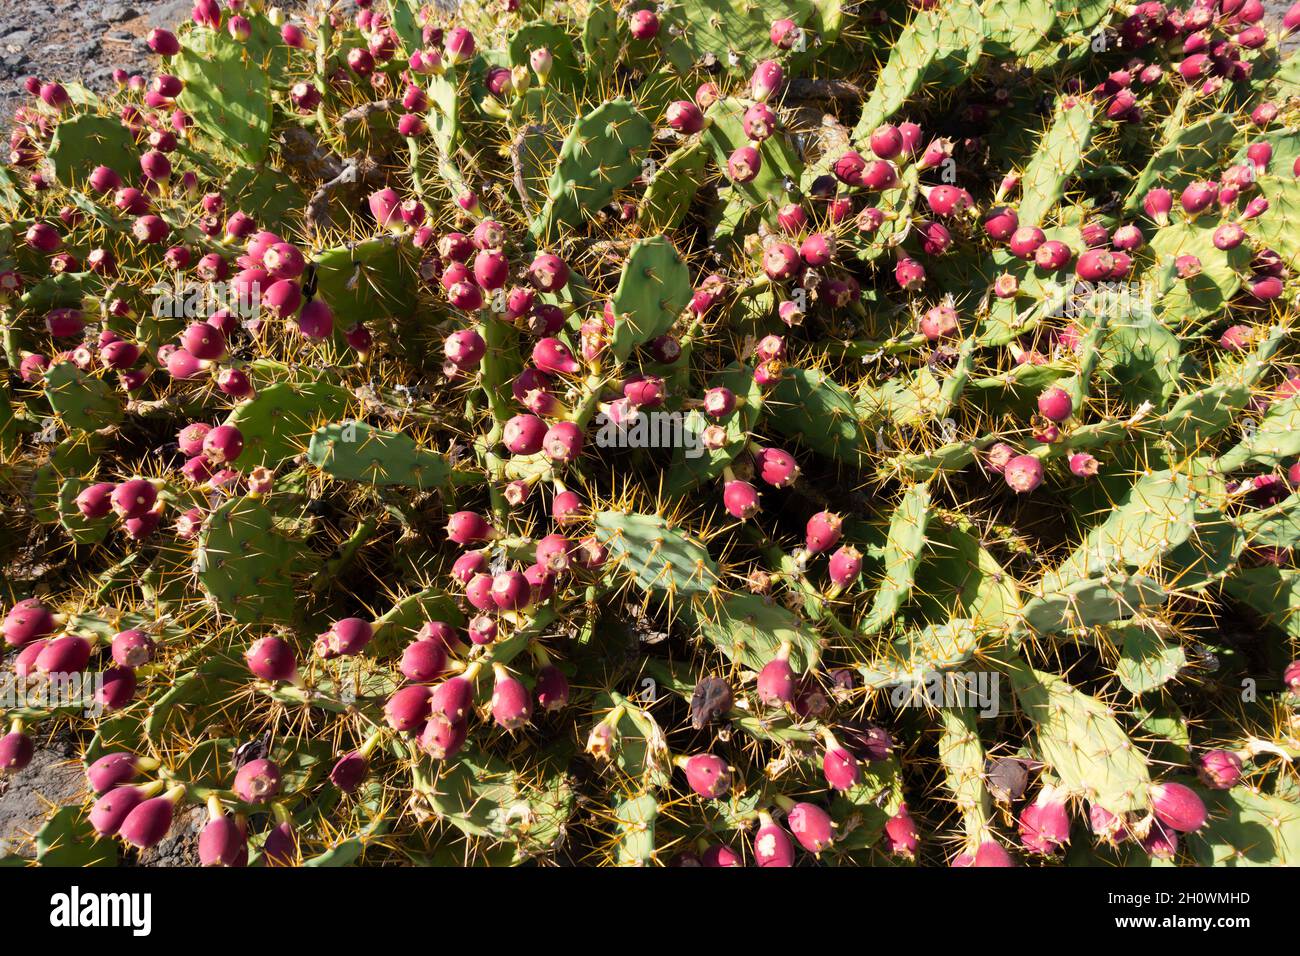 Opuntia dillenii cactus in Tenerife Stock Photo